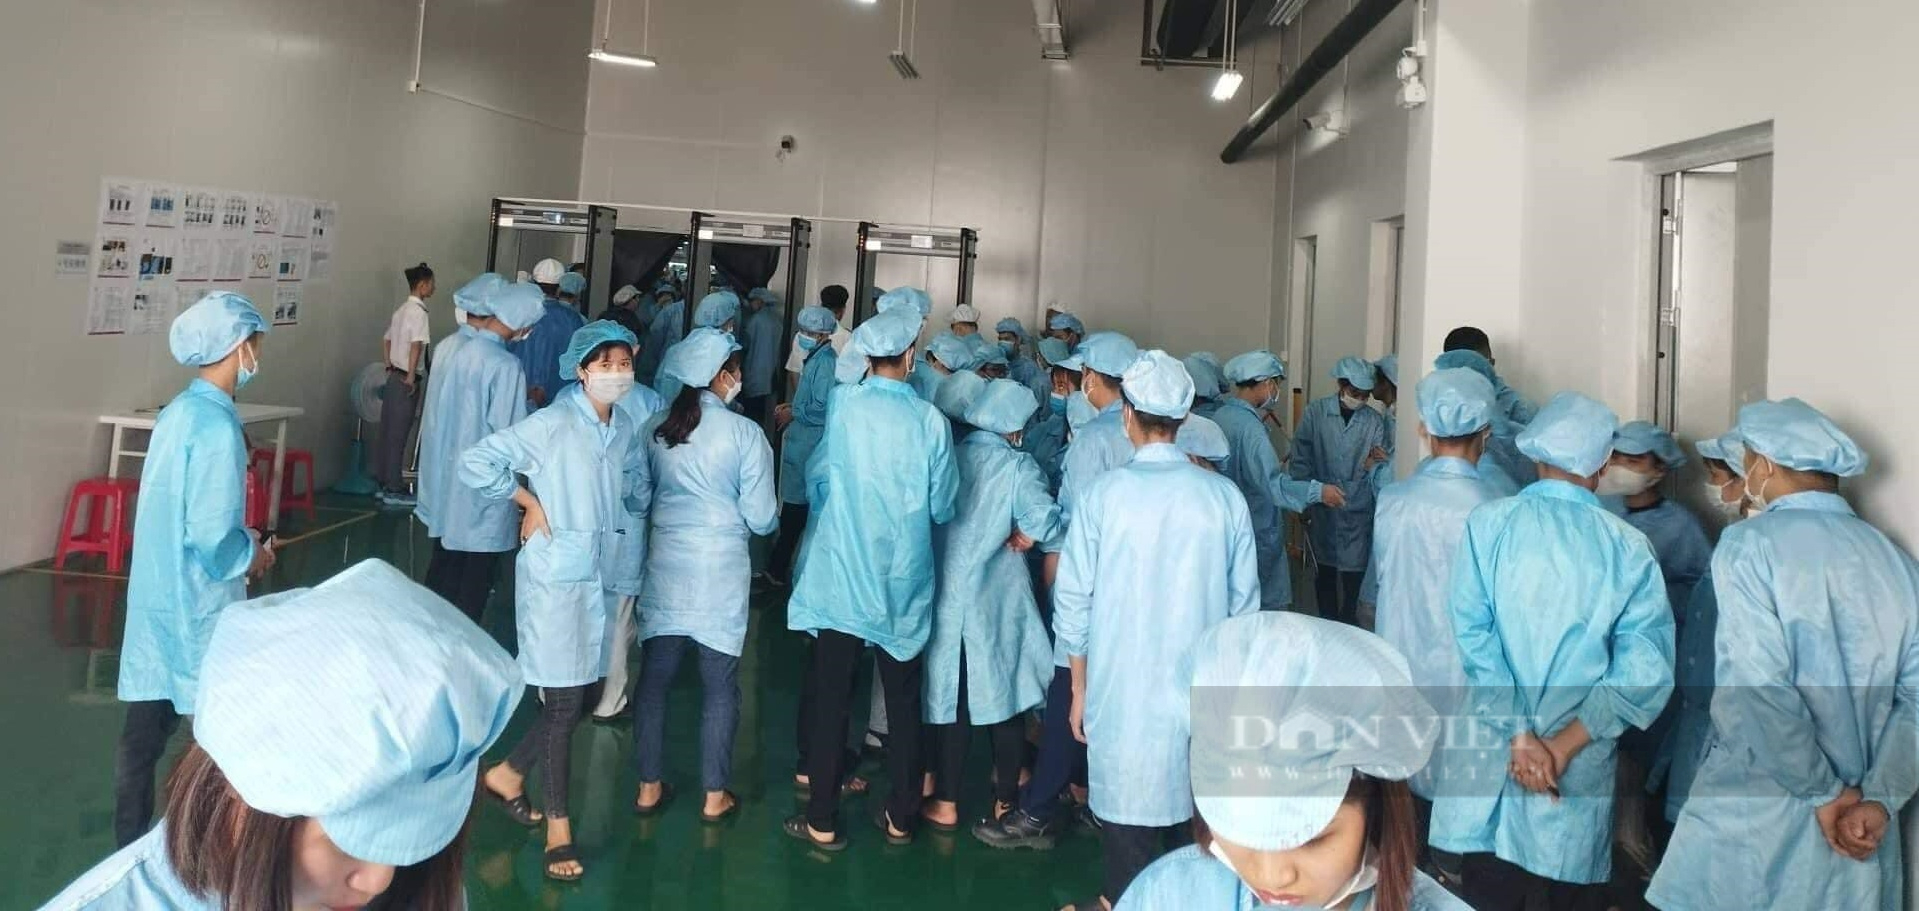 Phú Thọ: Hơn 1000 công nhân đình công vì hàng loạt chế độ tiền lương, lao động bất hợp lý - Ảnh 2.